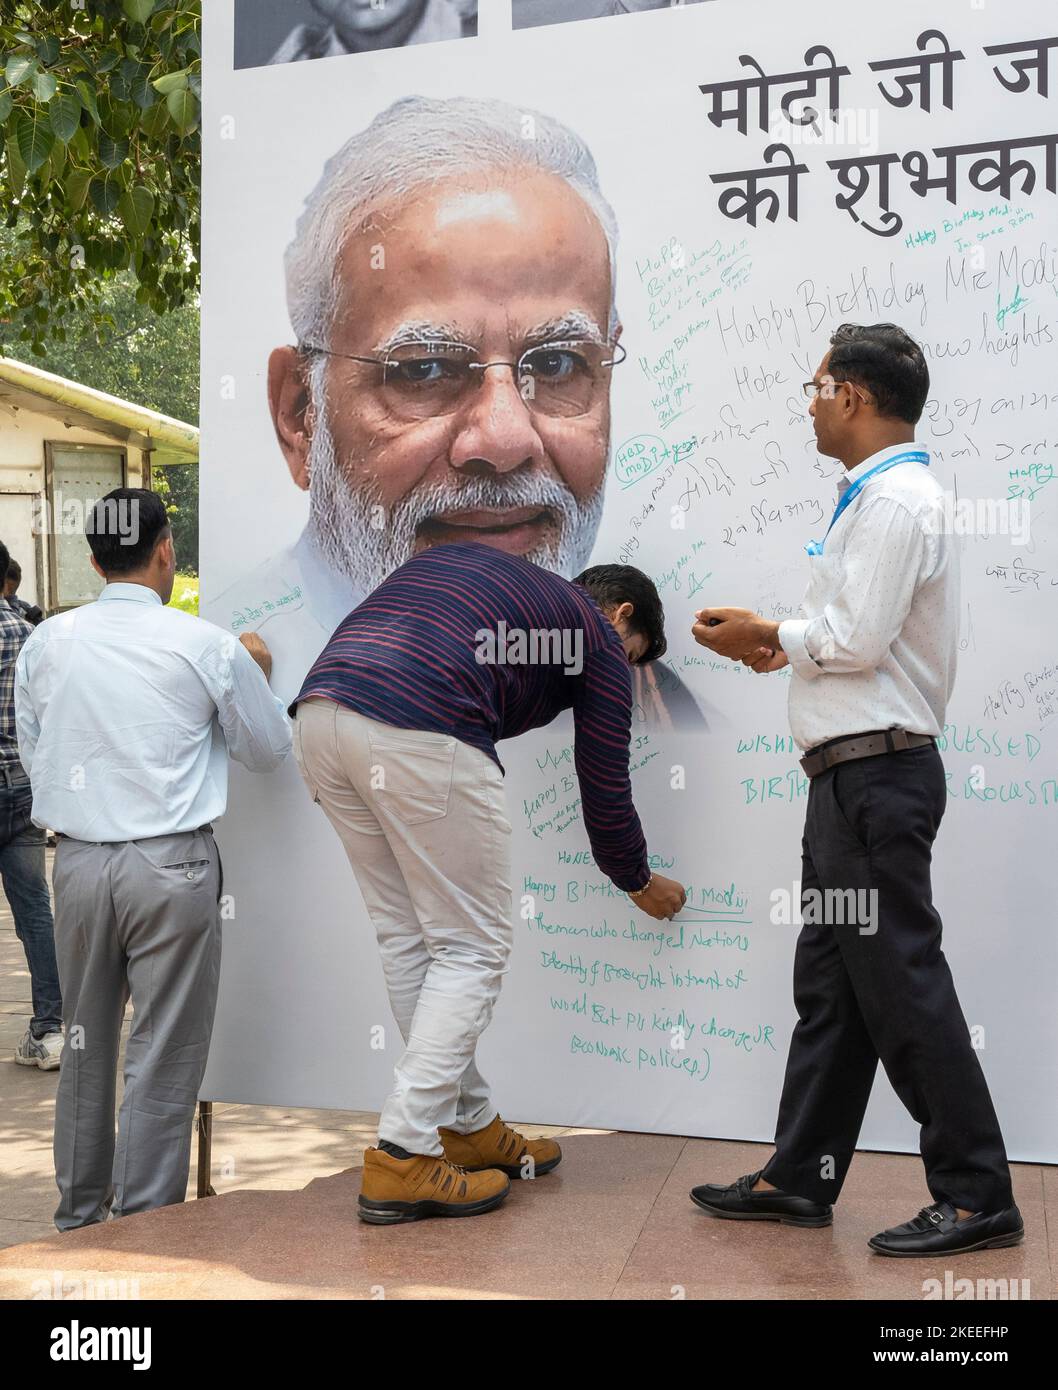 NEW DELHI - SEP 17: Manifesti con saluti a Narendra Damodardas modi primo ministro indiano durante la celebrazione del suo compleanno a Nuova Delhi il settembre Foto Stock